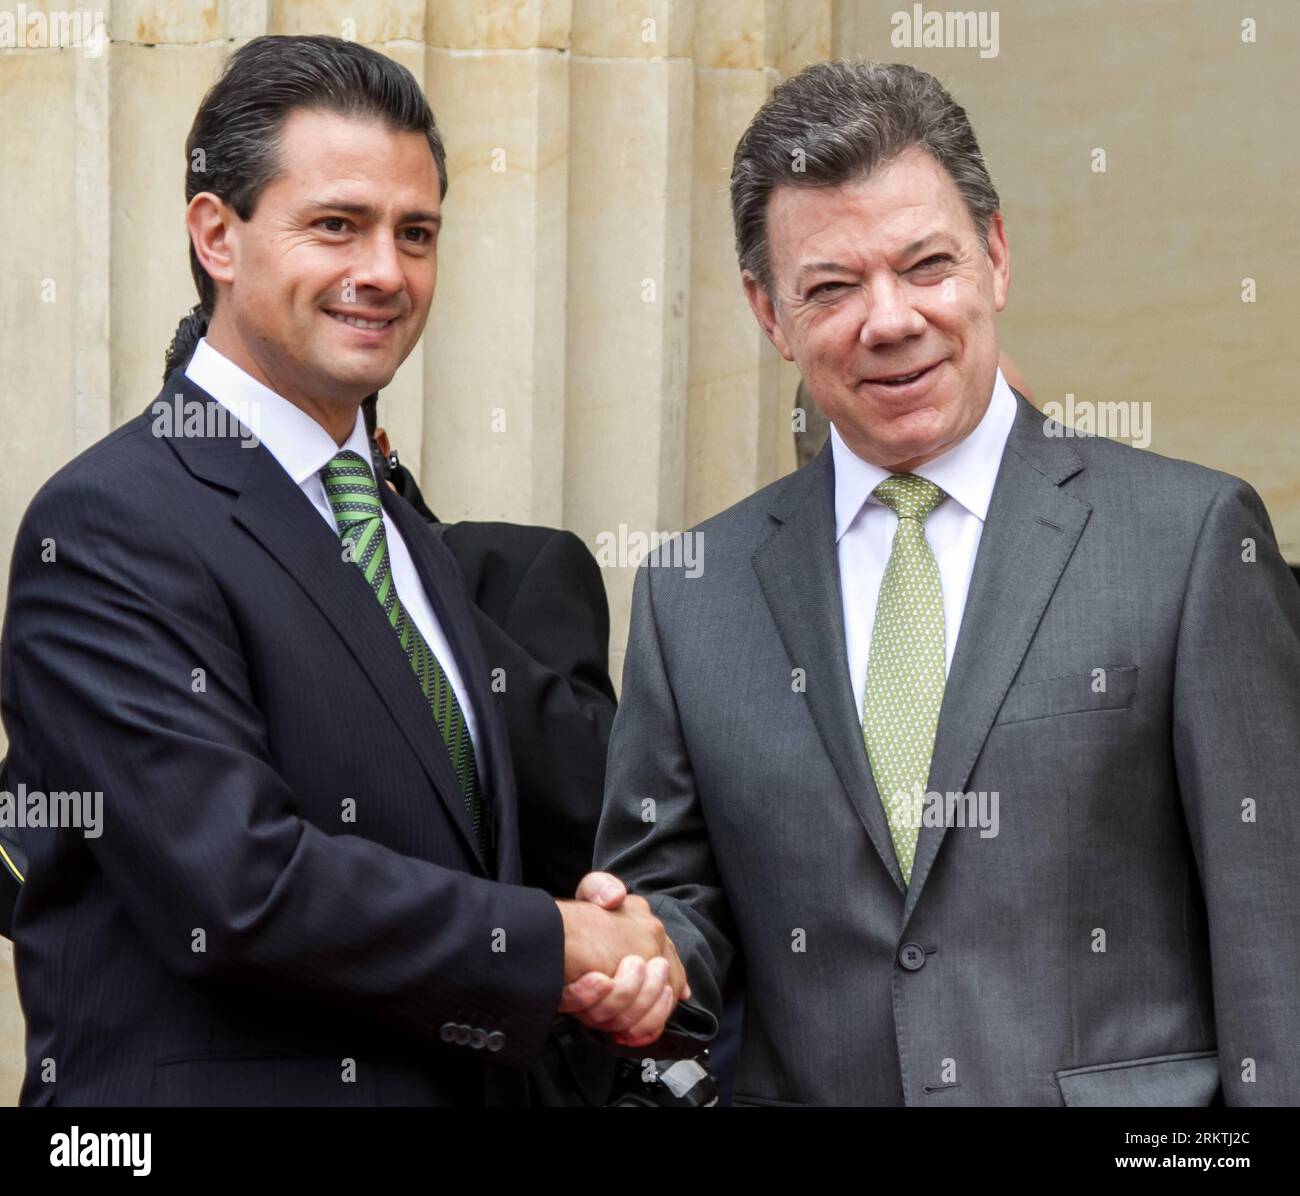 Bildnummer : 58489429 Datum : 18.09.2012 Copyright : imago/Xinhua (120918) -- BOGOTA, 18 septembre 2012 (Xinhua) -- le président colombien Juan Manuel Santos (à droite) serre la main du président mexicain élu Enrique Pena Nieto, à Bogota, Colombie, le 18 septembre 2012. Pena Nieto est en Colombie pour une visite d'une journée. (Xinhua/Jhon Paz) COLOMBIA-BOGOTA-MEXICO-POLITICS-VISIT PUBLICATIONxNOTxINxCHN People Politik x0x xmb 2012 quadrat premiumd 58489429 Date 18 09 2012 Copyright Imago XINHUA Bogota sept 18 2012 XINHUA Président colombien Juan Manuel Santos r serre la main du Président MEXICAIN élu Enrique Banque D'Images